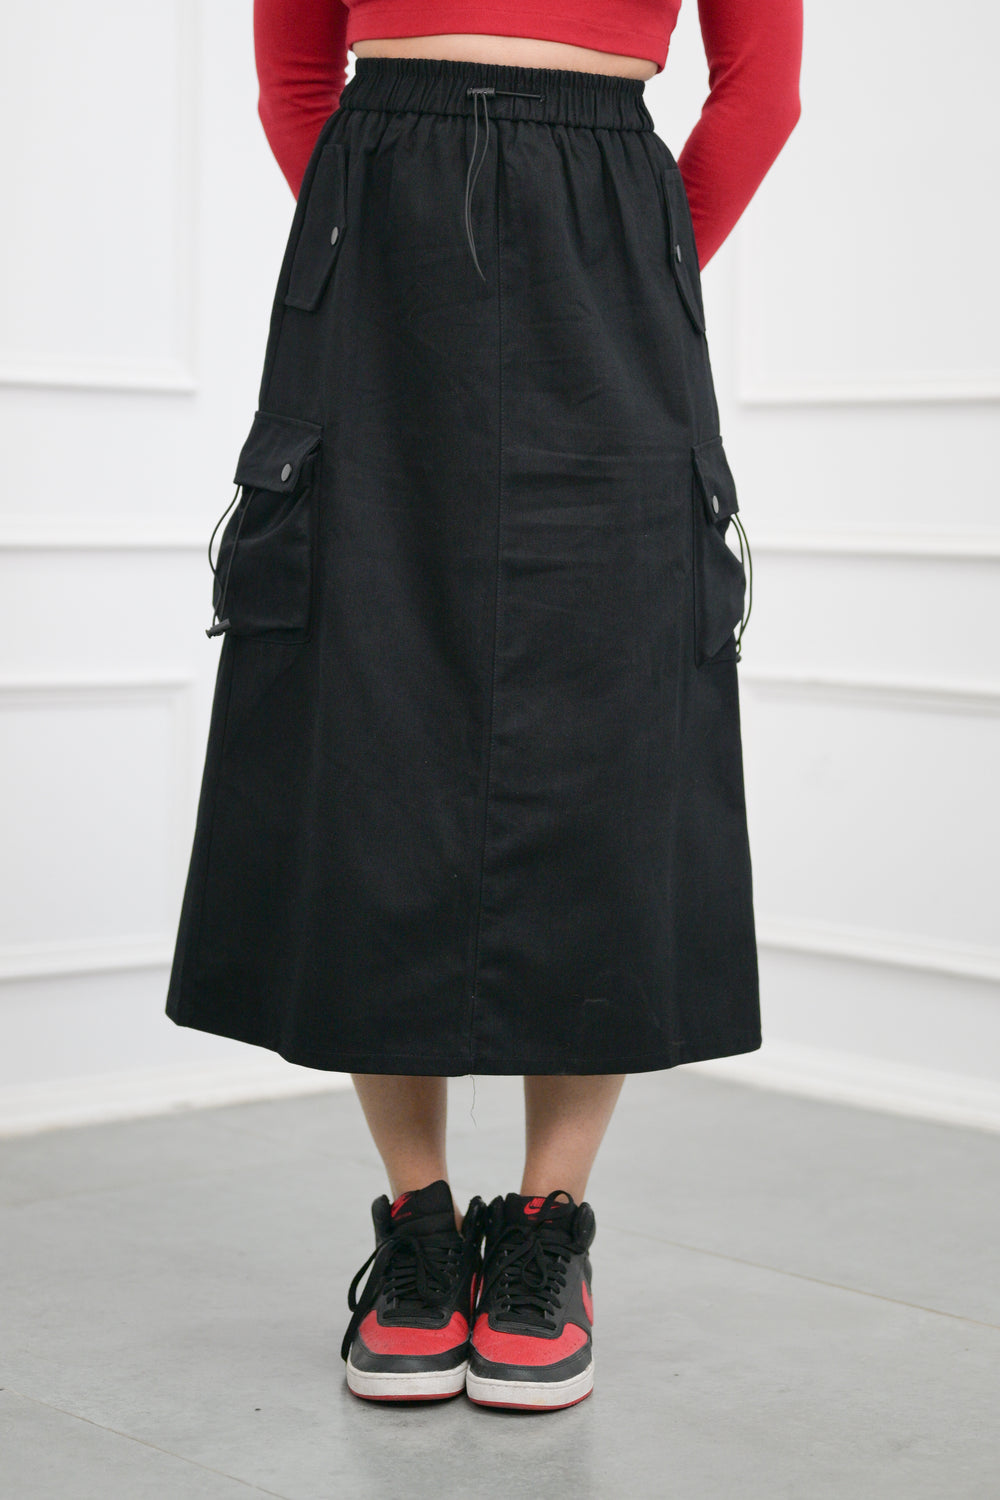 Womens black street style cargo skirt